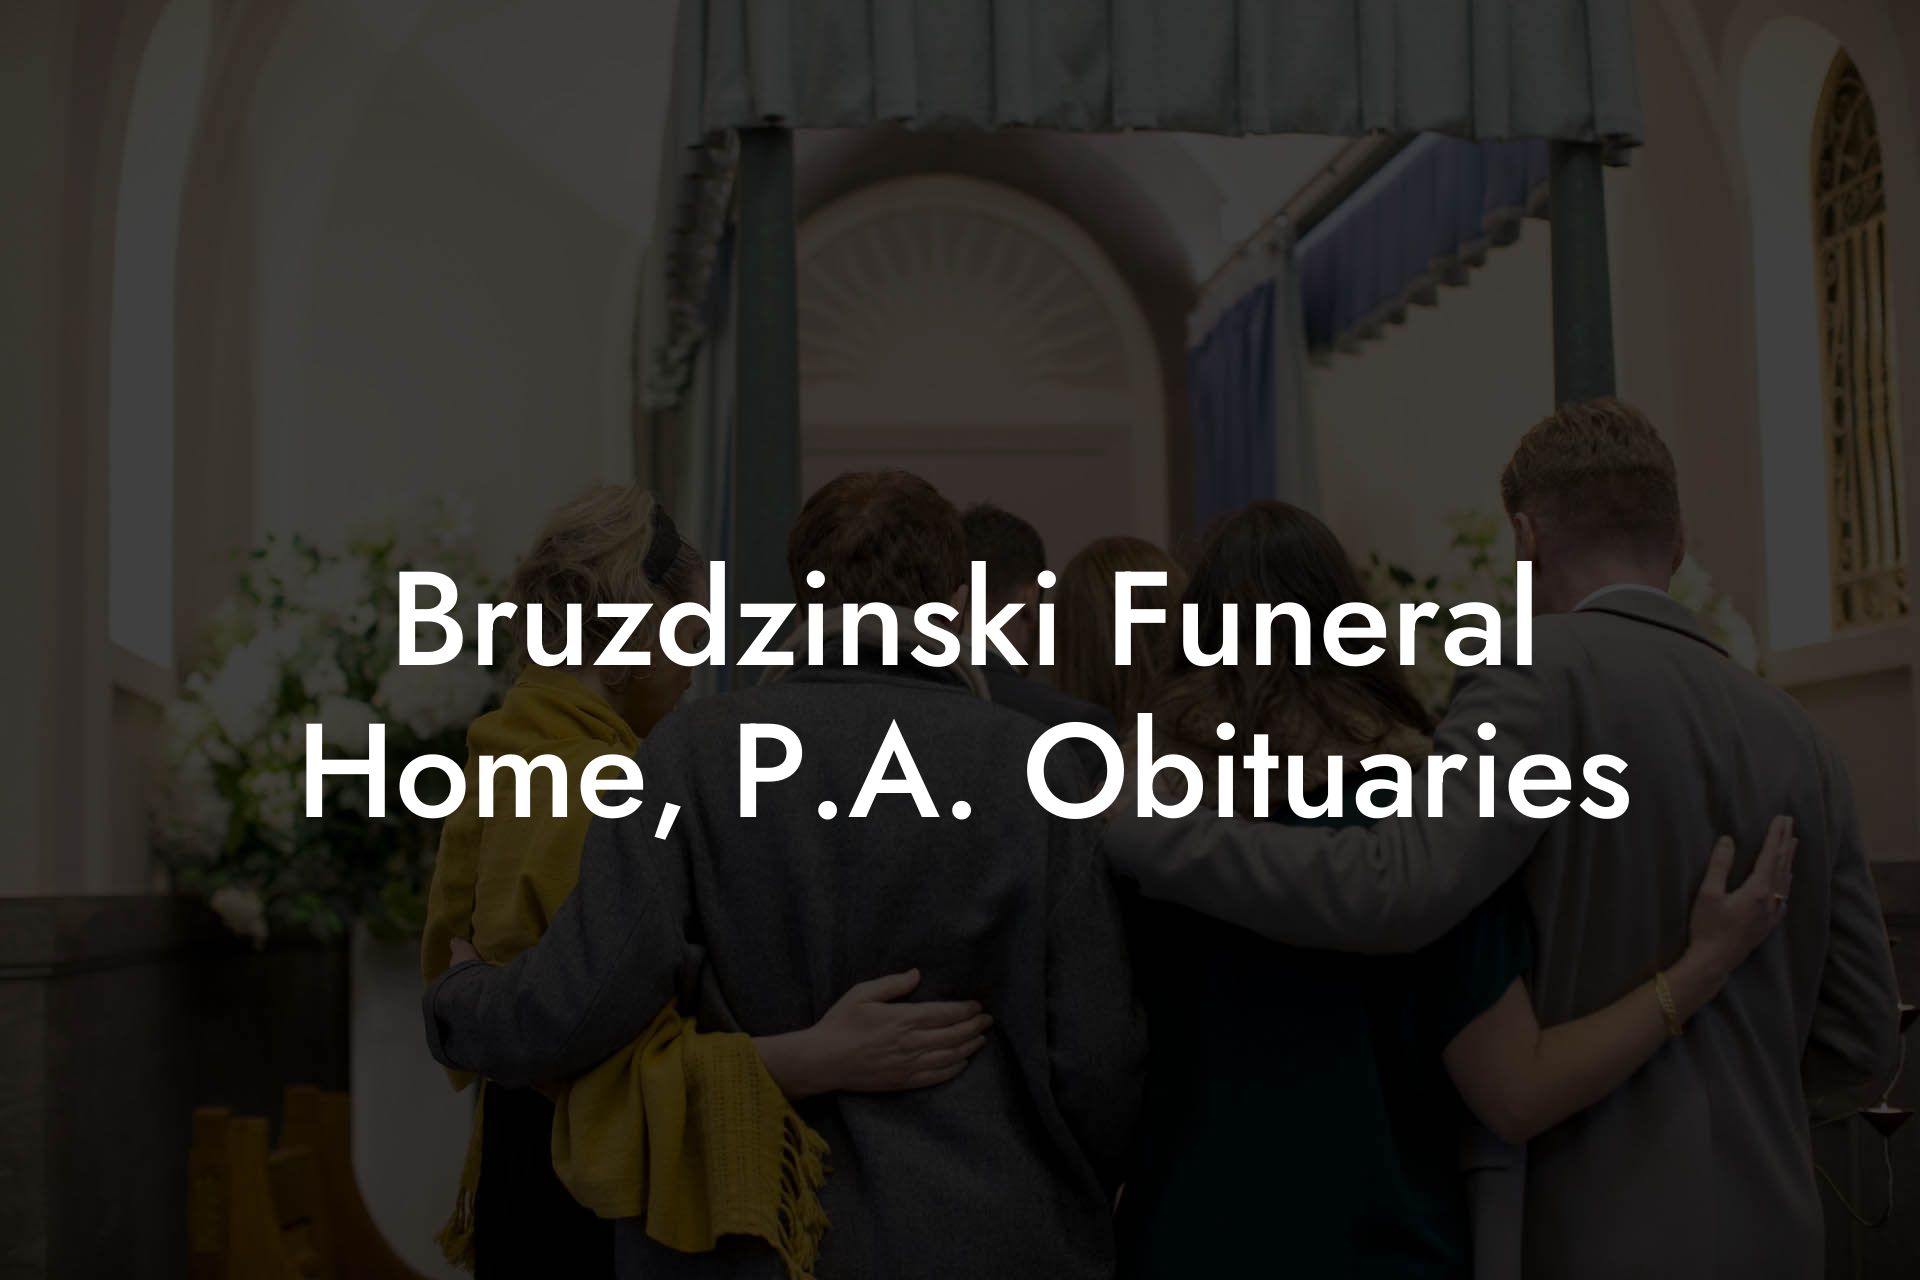 Bruzdzinski Funeral Home, P.A. Obituaries